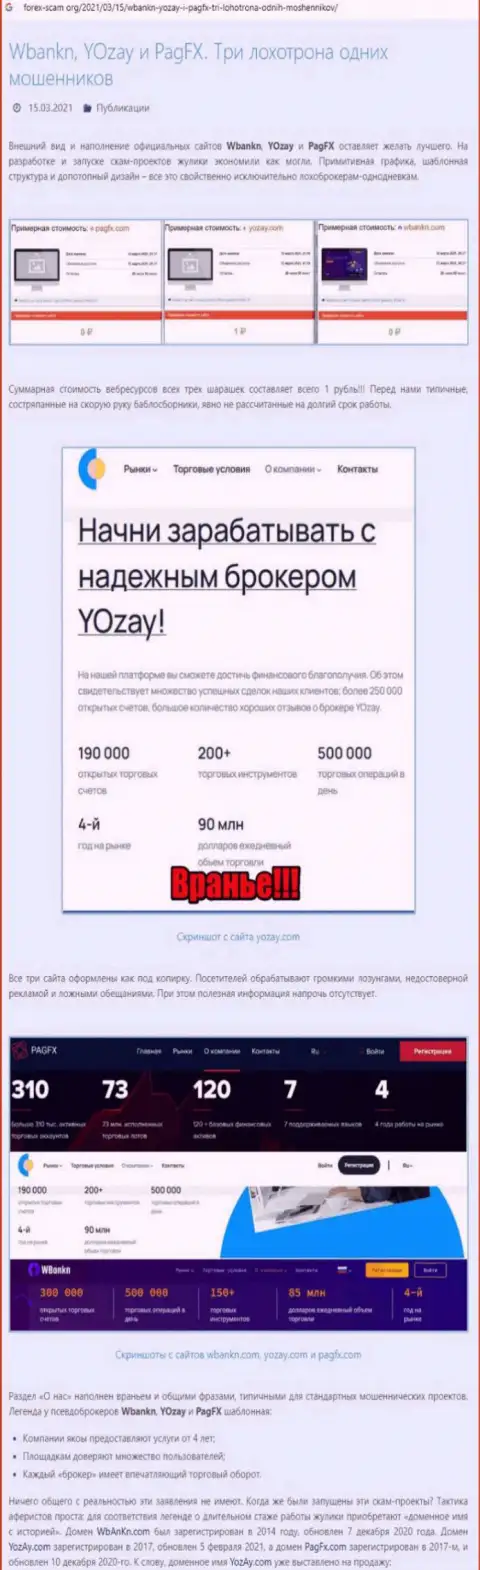 Обзорная статья о том, как YOZay Com, кидает людей на деньги